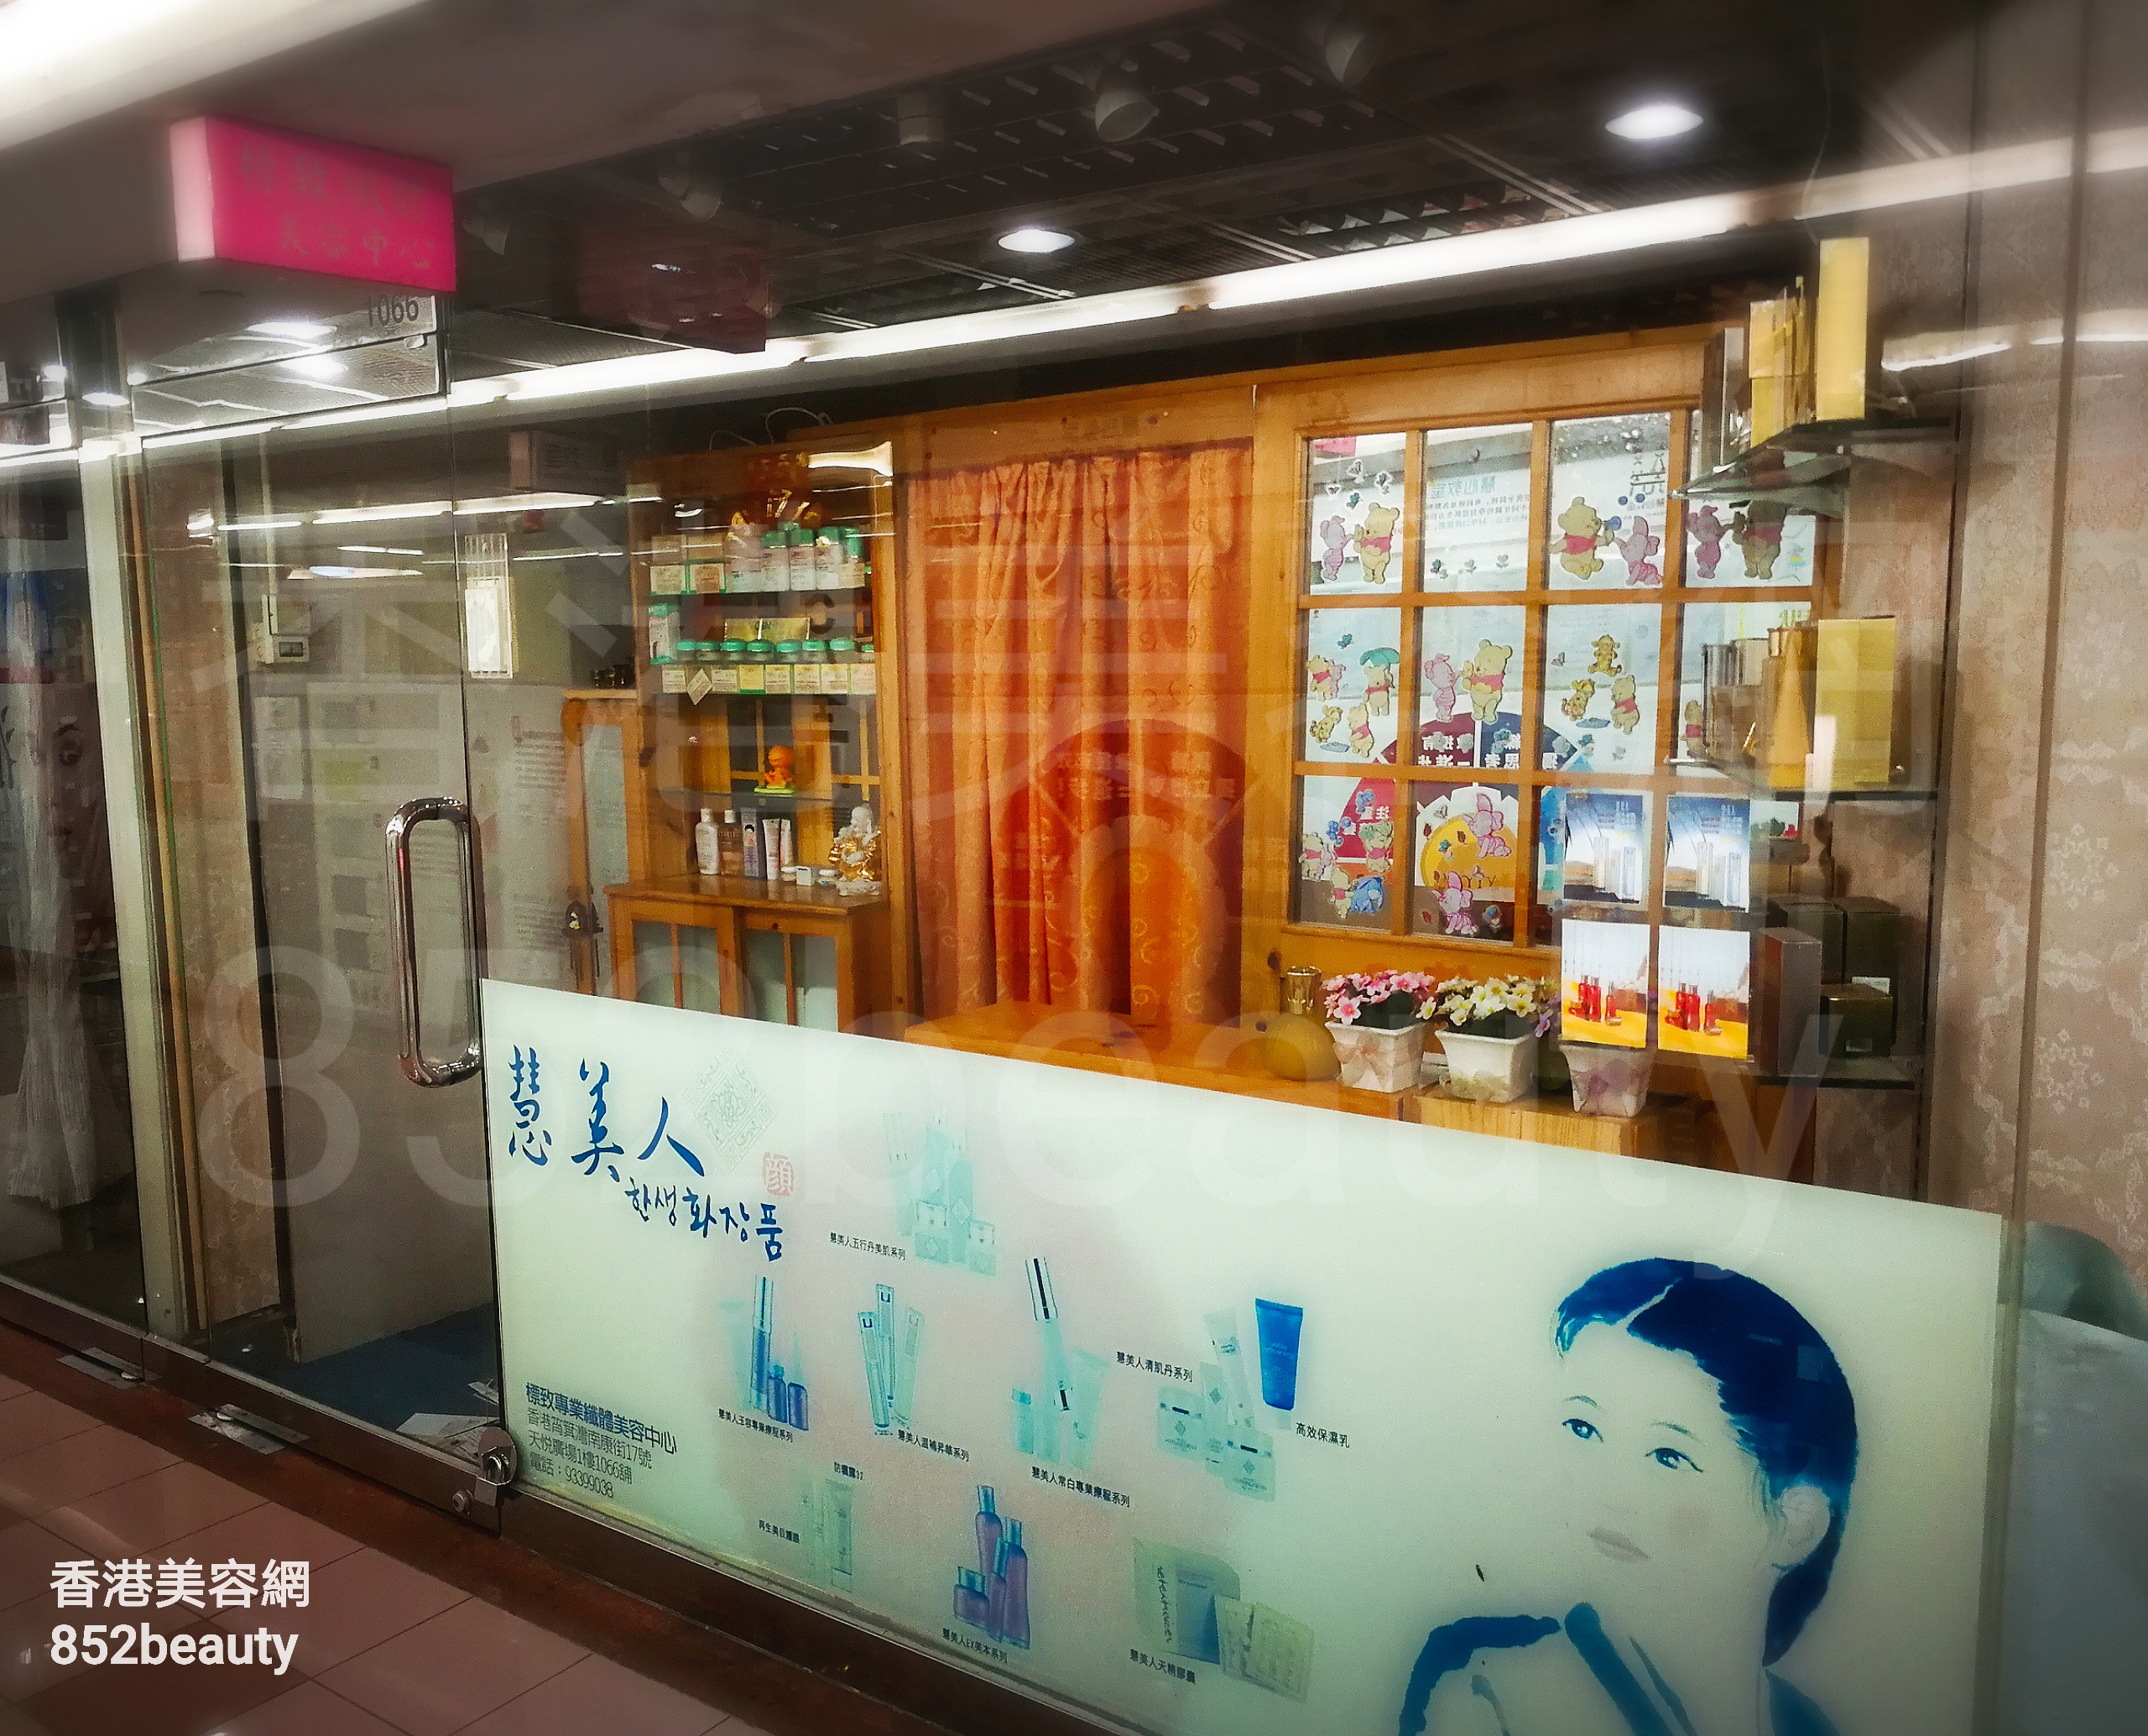 香港美容網 Hong Kong Beauty Salon 美容院 / 美容師: 標緻專業纖體美容中心